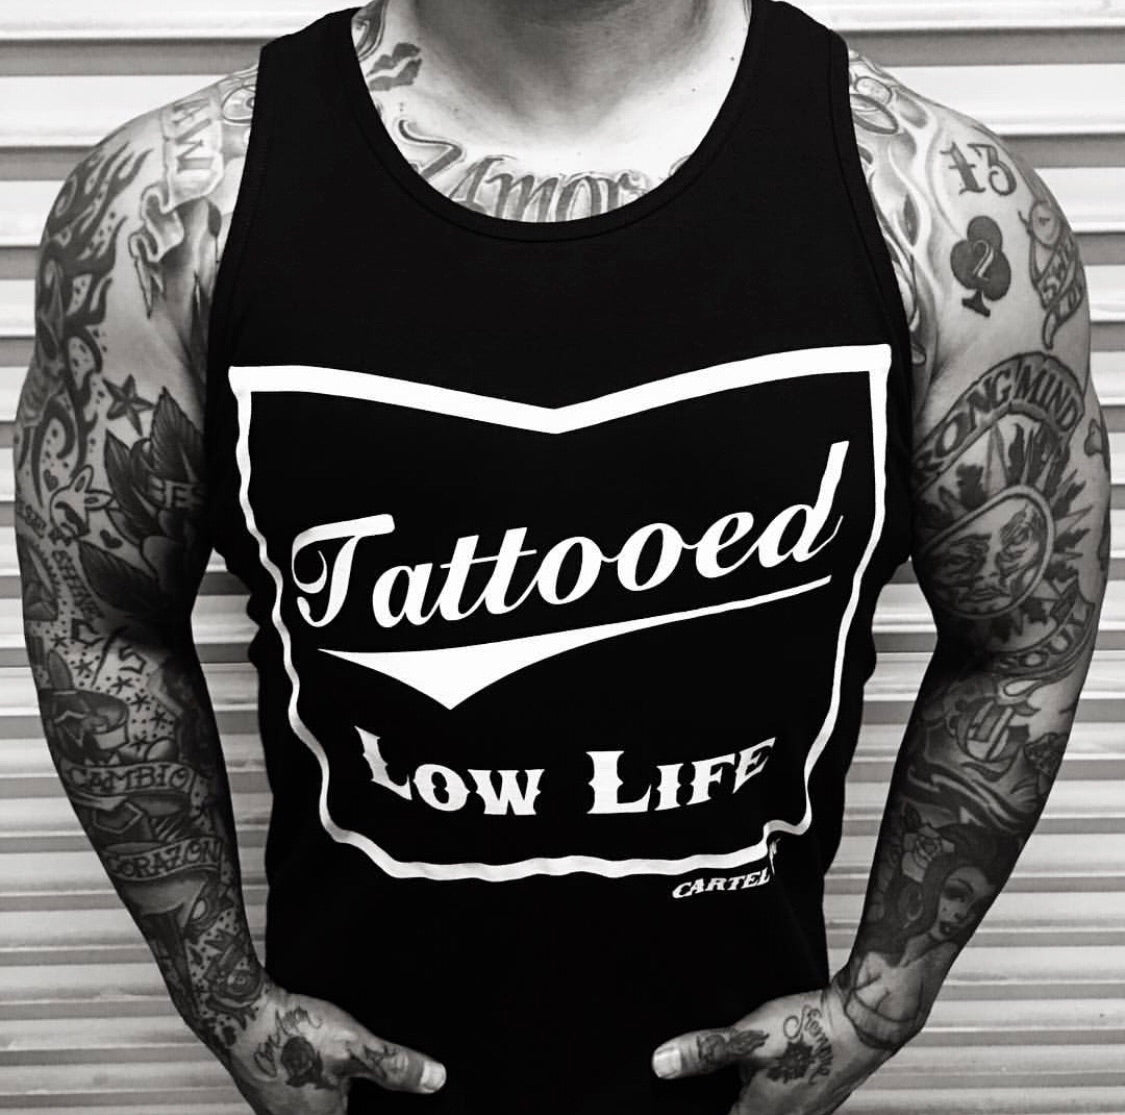 Tattooed Low life Men's Tank Top